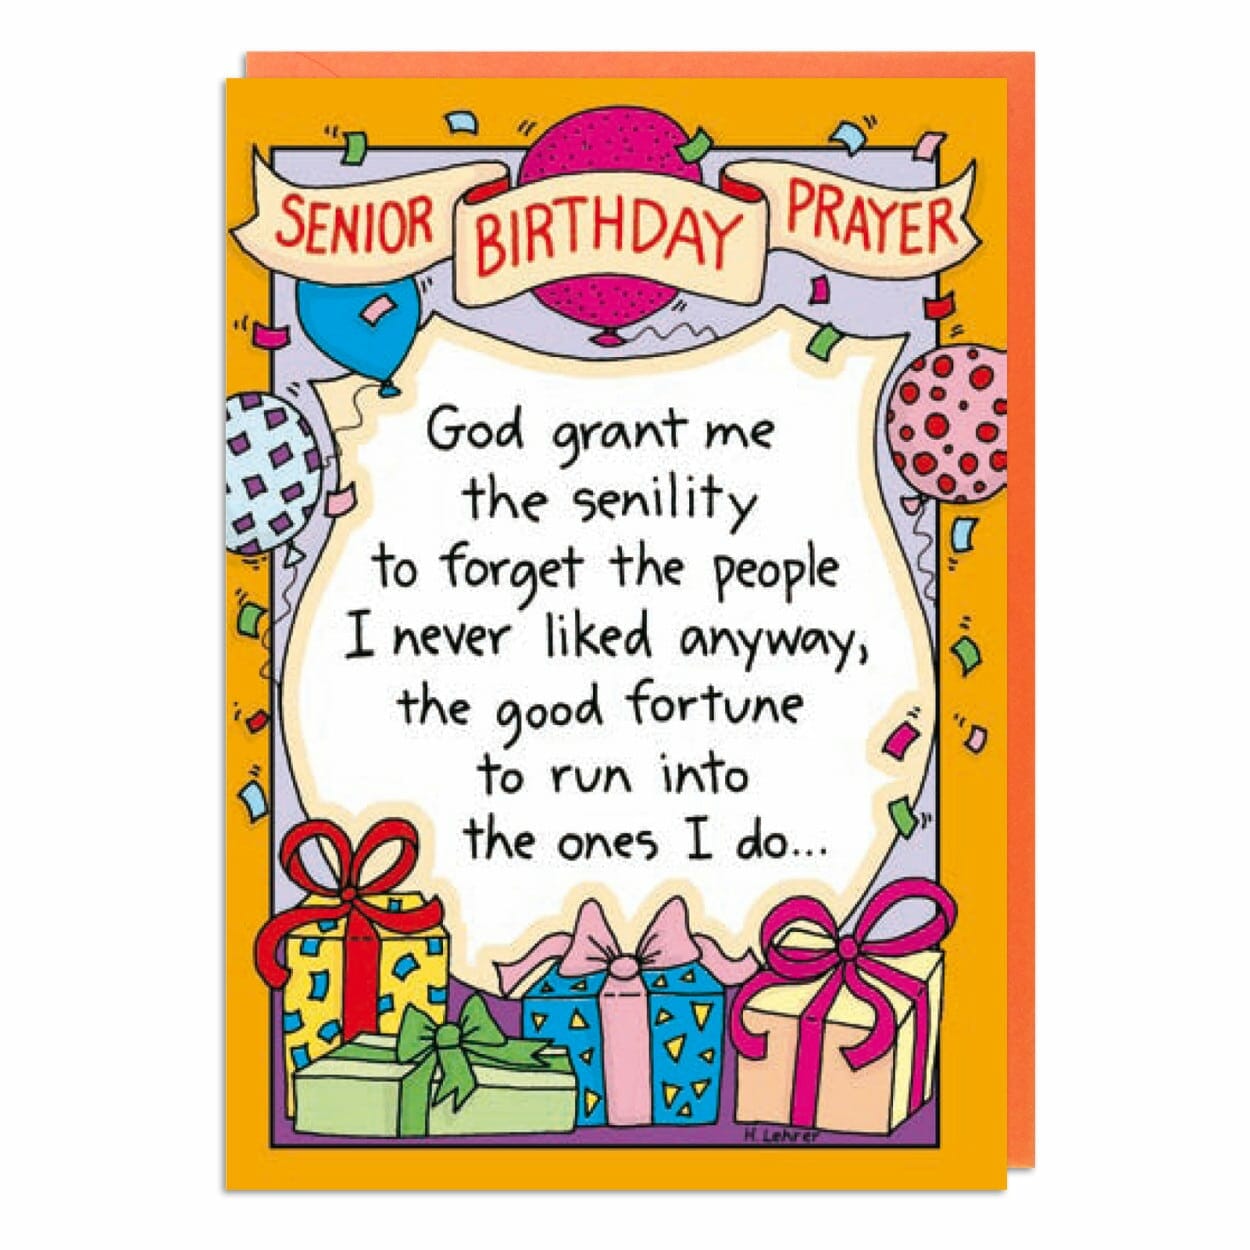 Senior Birthday Prayer - Funny Cards